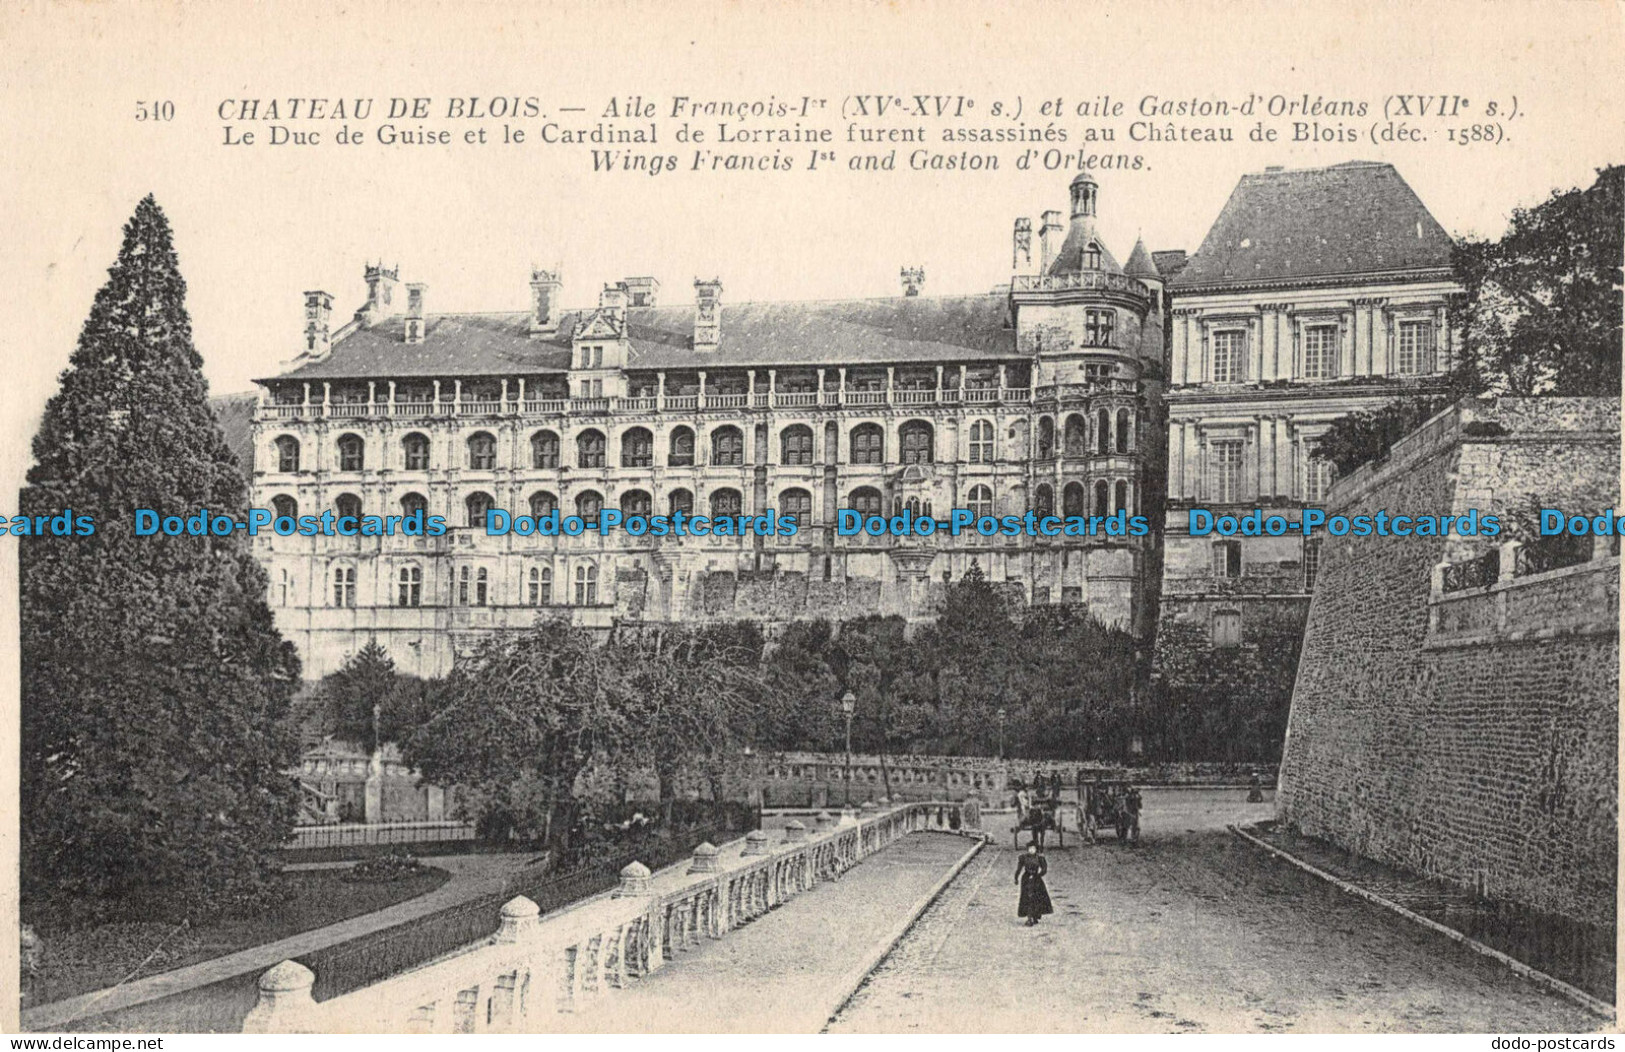 R094346 Chateau De Blois. Wings Francis Ist And Gaston D Orleans. No 540 - Mundo